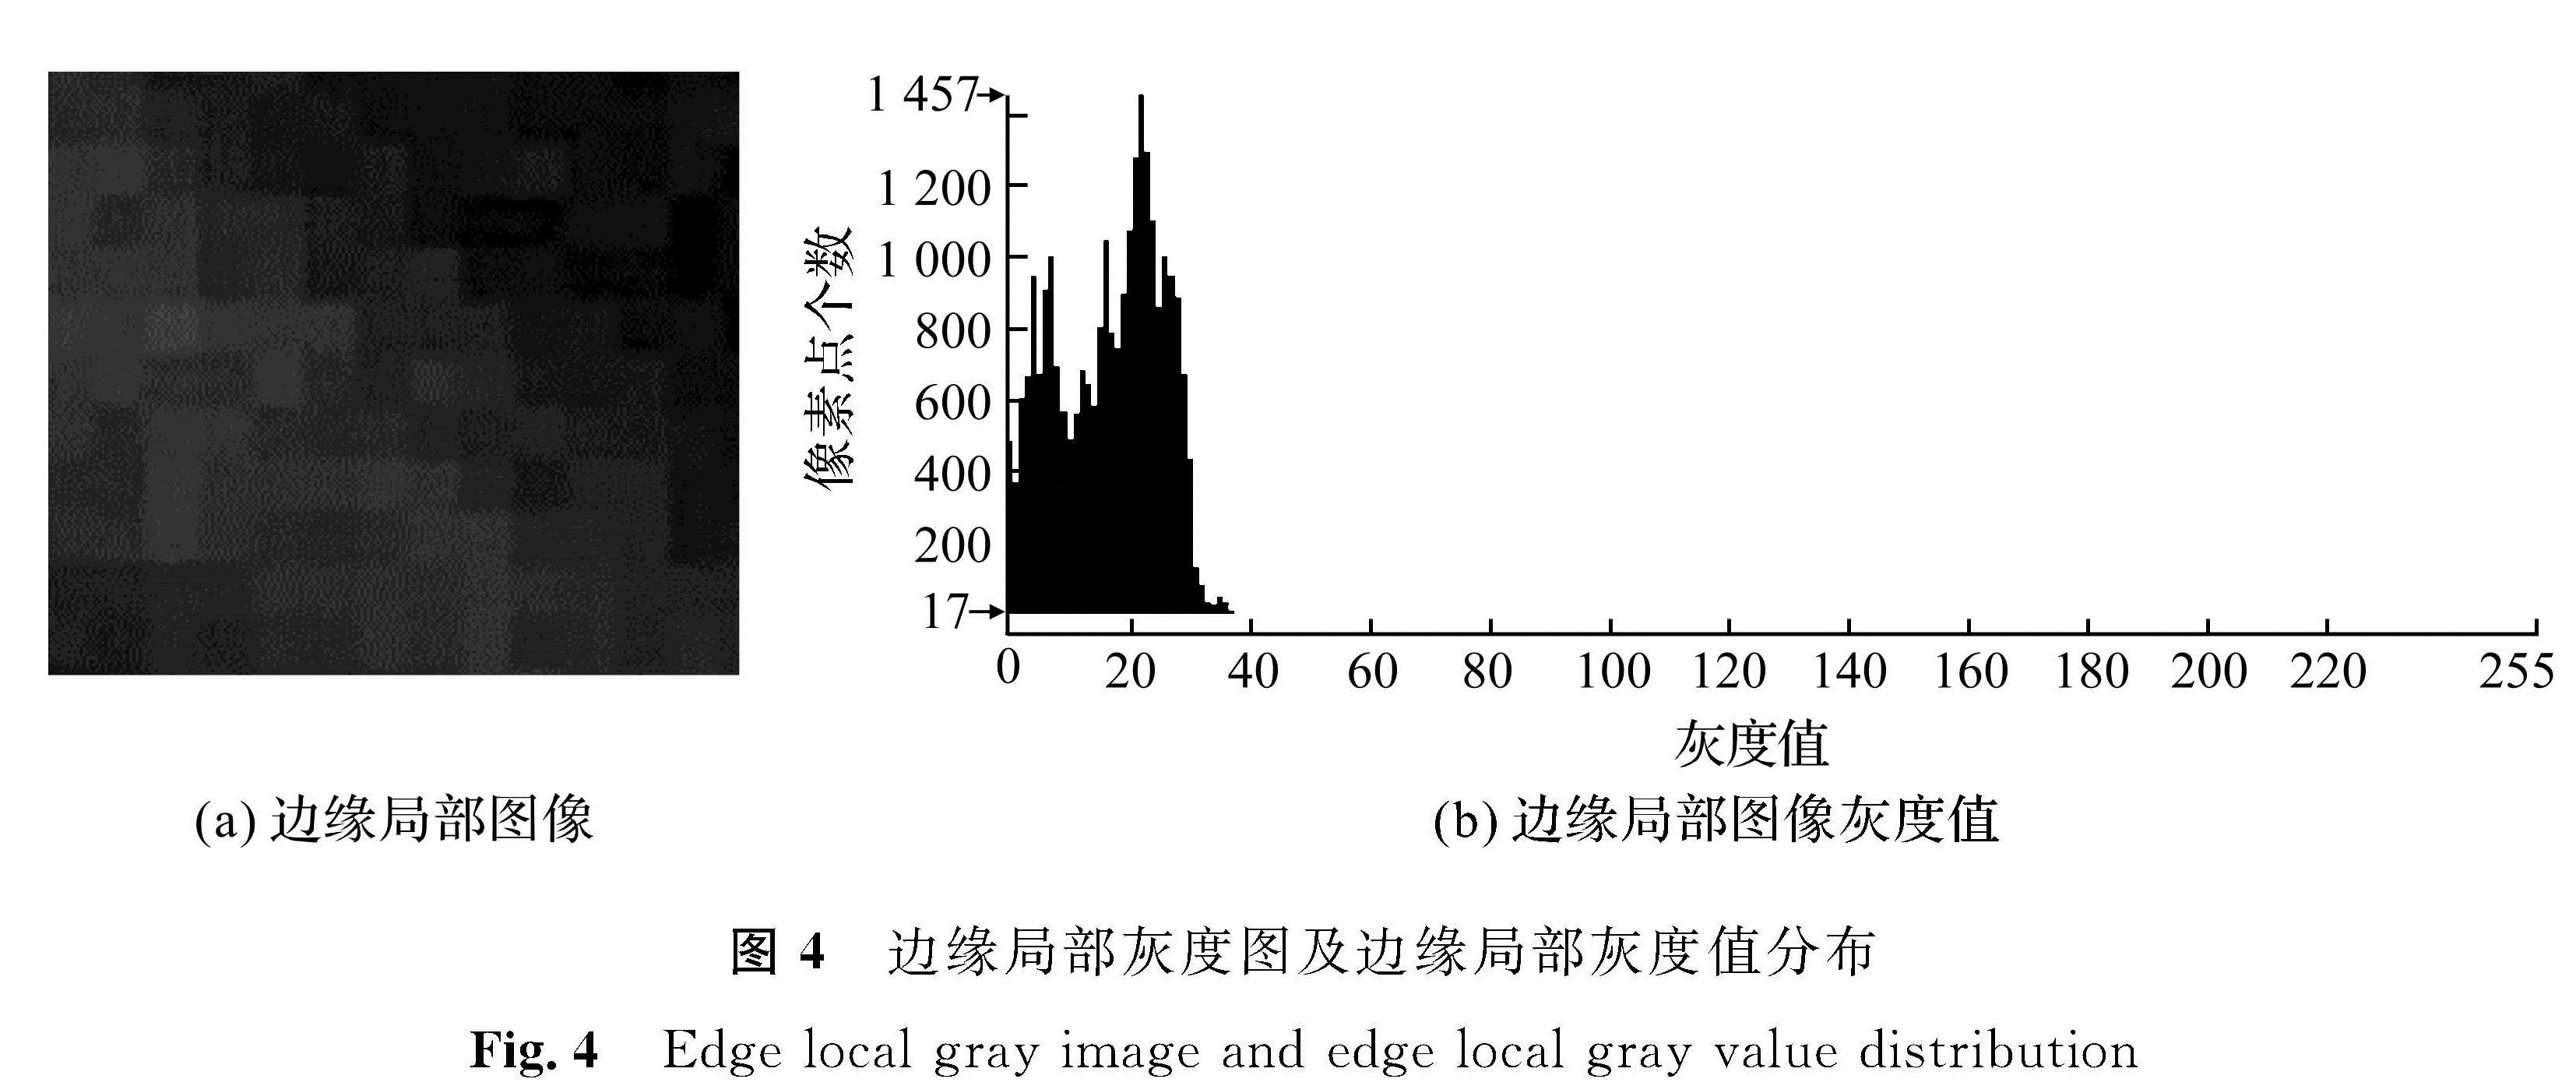 图4 边缘局部灰度图及边缘局部灰度值分布<br/>Fig.4 Edge local gray image and edge local gray value distribution